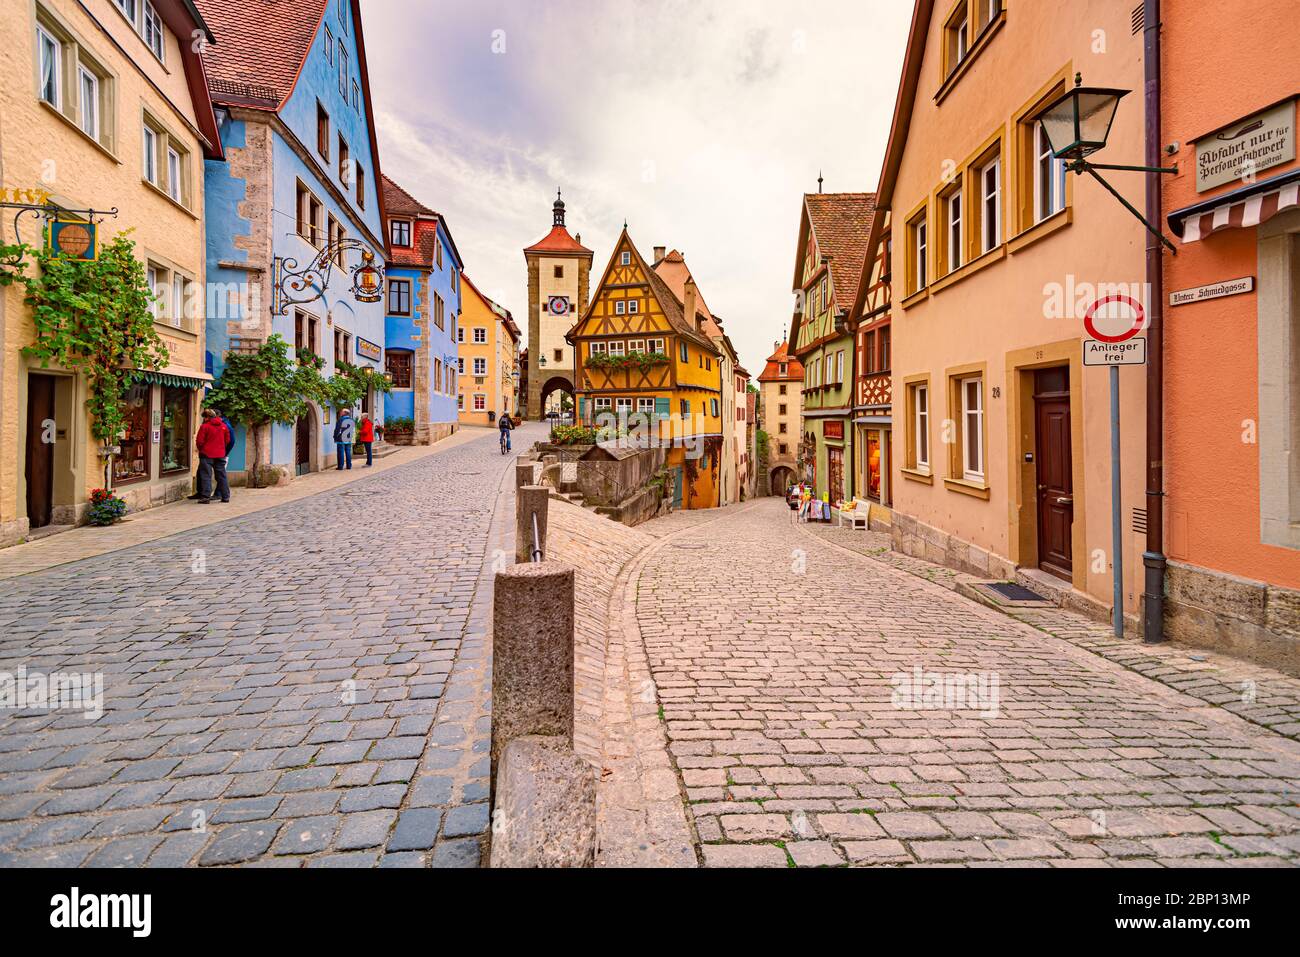 Rothenburg OB Der Tauber, Allemagne - 24 SEPTEMBRE 2014 : vue sur la rue de la vieille ville avec l'architecture traditionnelle de Rothenburg OB Der Tauber, Bavière, GE Banque D'Images